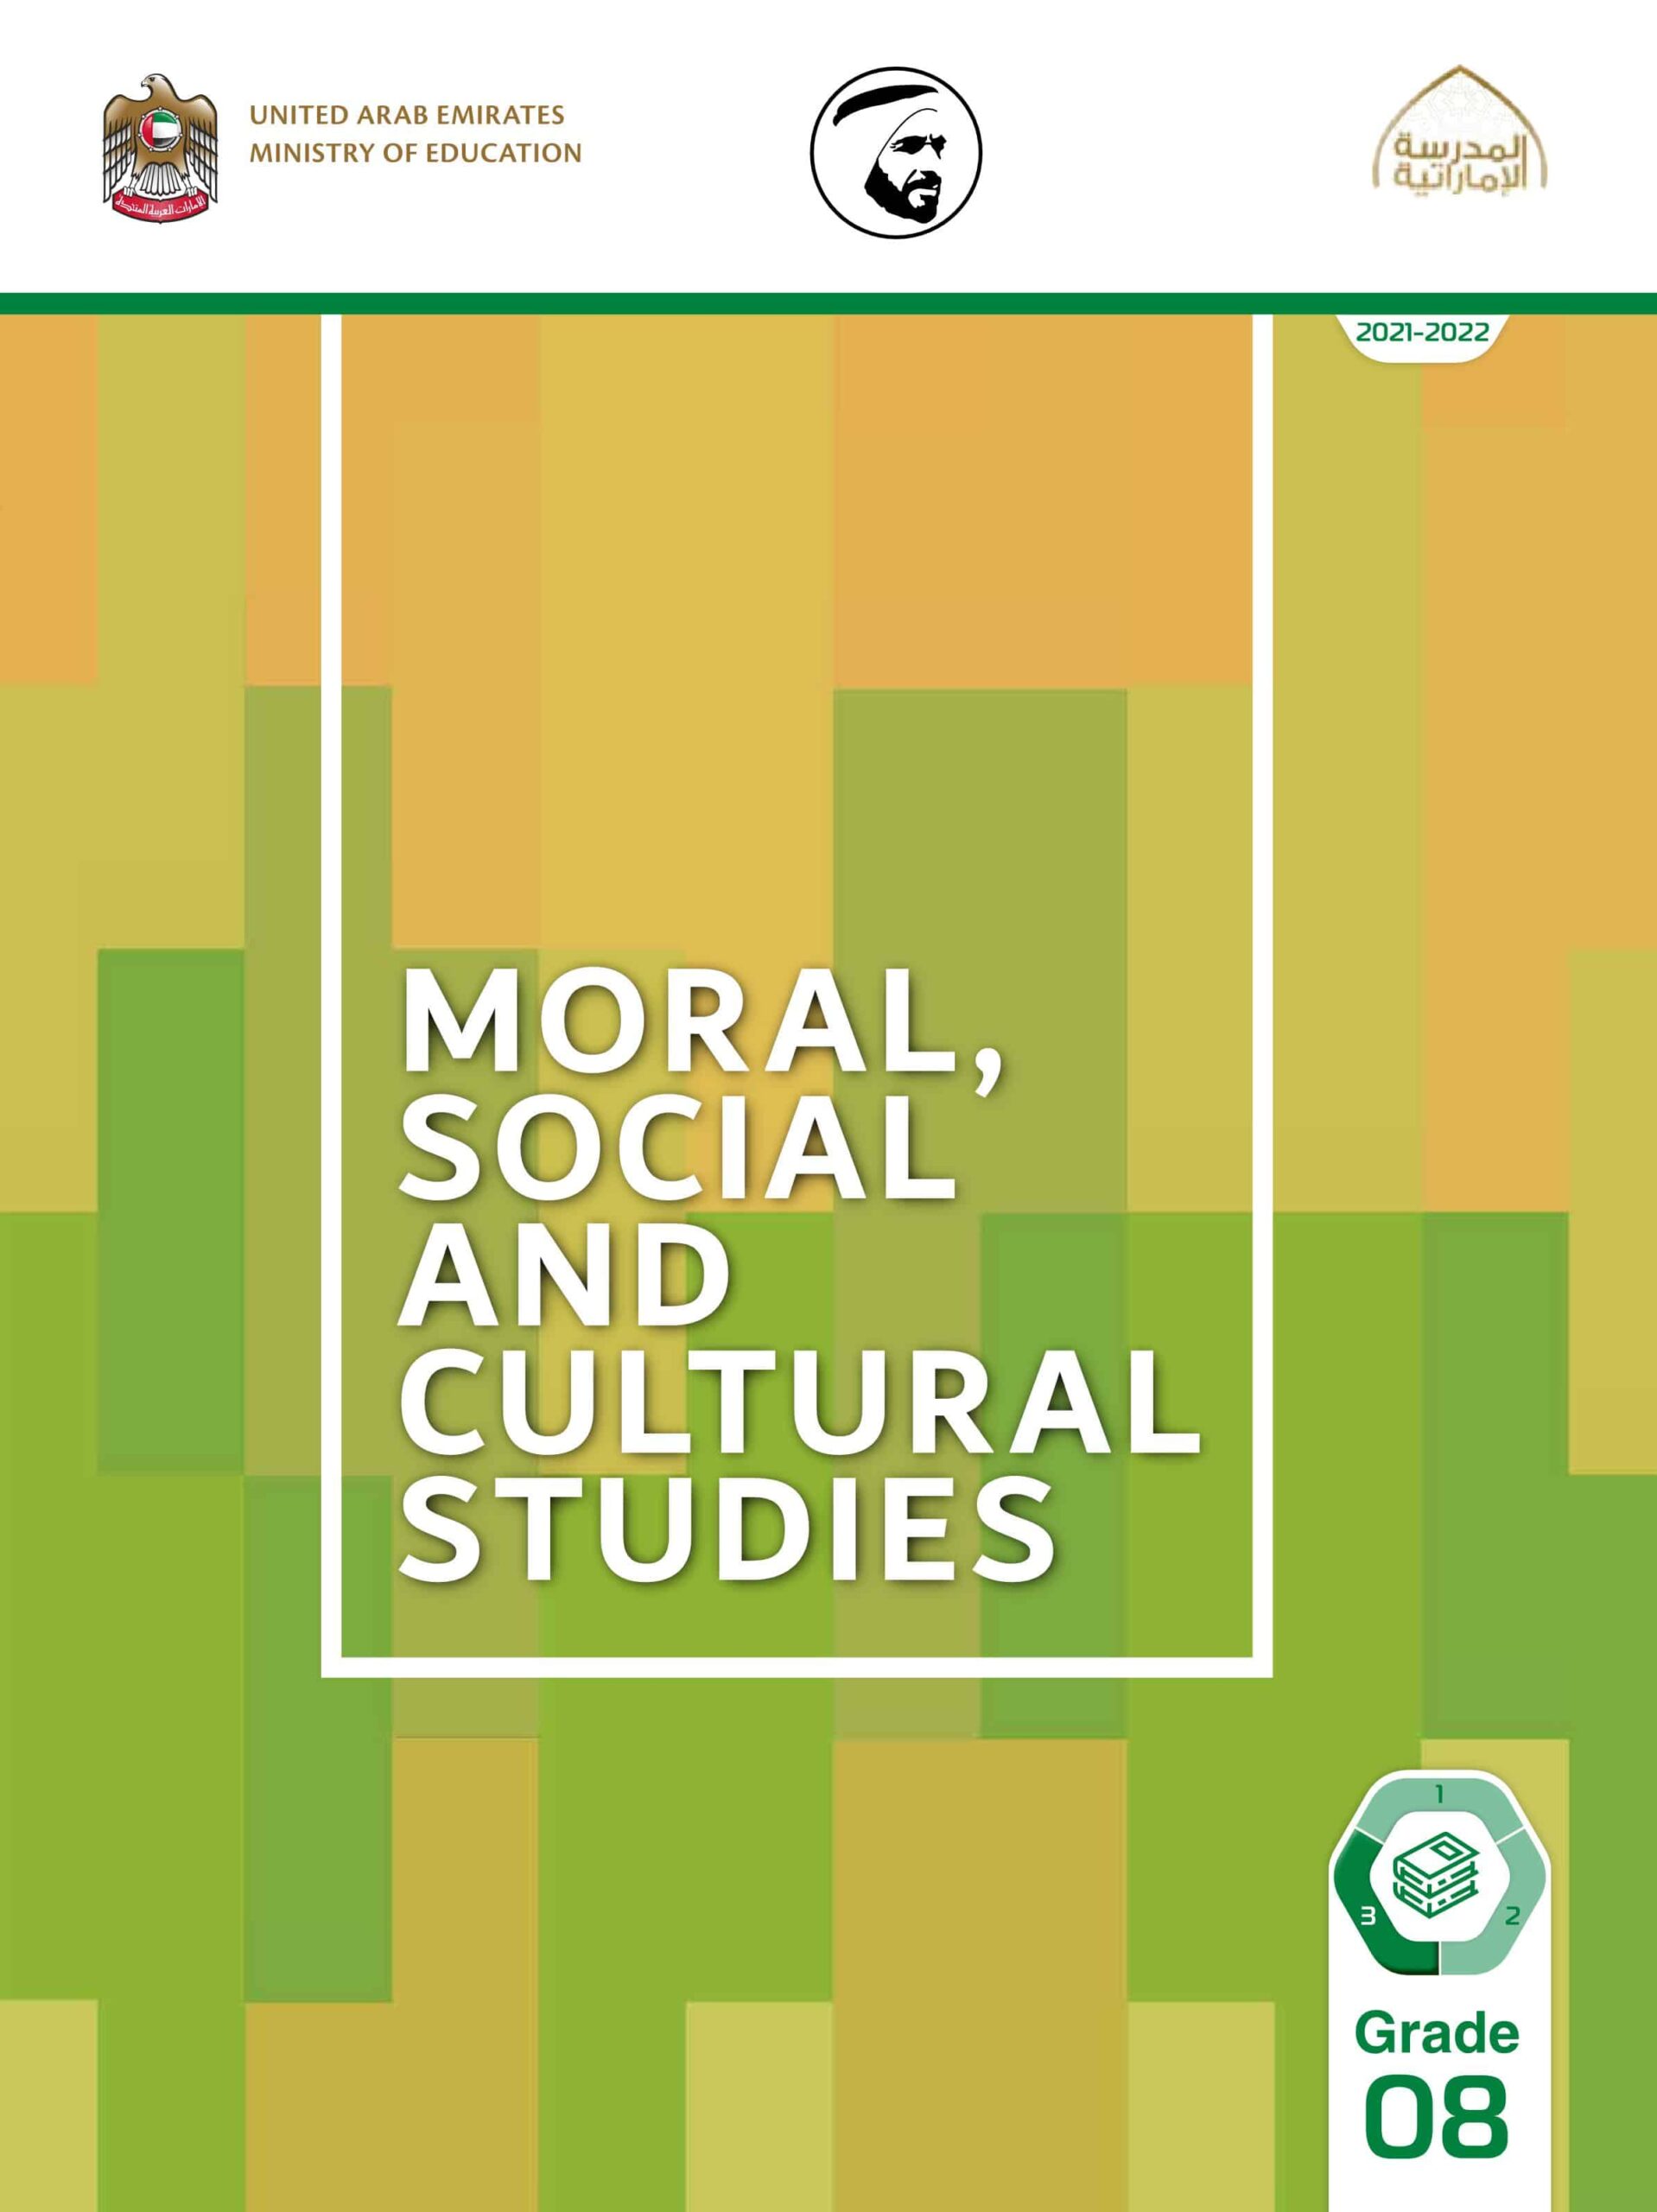 كتاب الطالب لغير الناطقين باللغة العربية Moral, Social & Cultural Studies الصف الثامن الفصل الدراسي الثالث 2021-2022